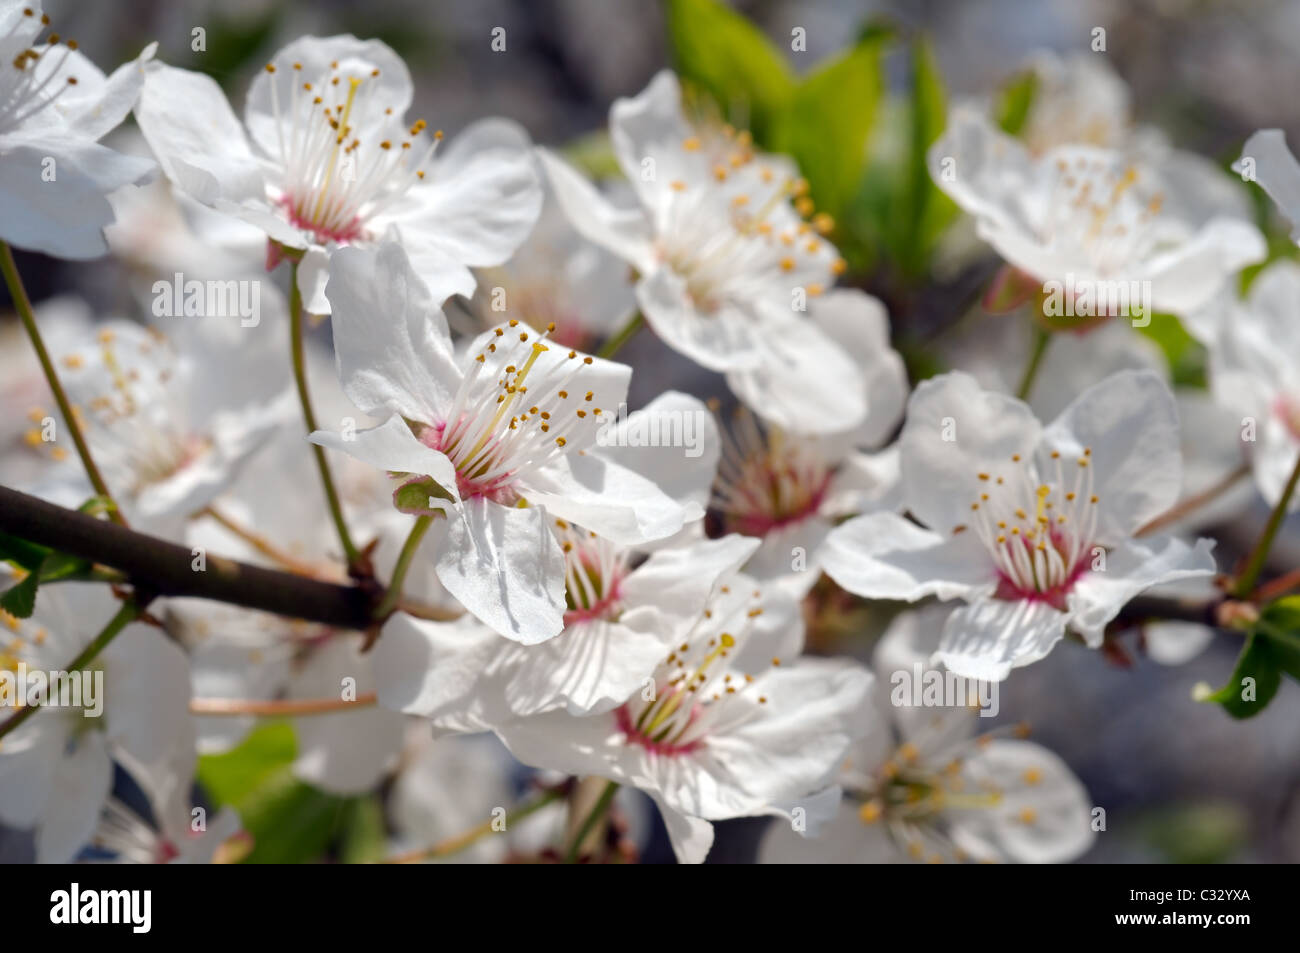 Blossoming Cherry (Prunus avium), Ukraine, Eastern Europe Stock Photo